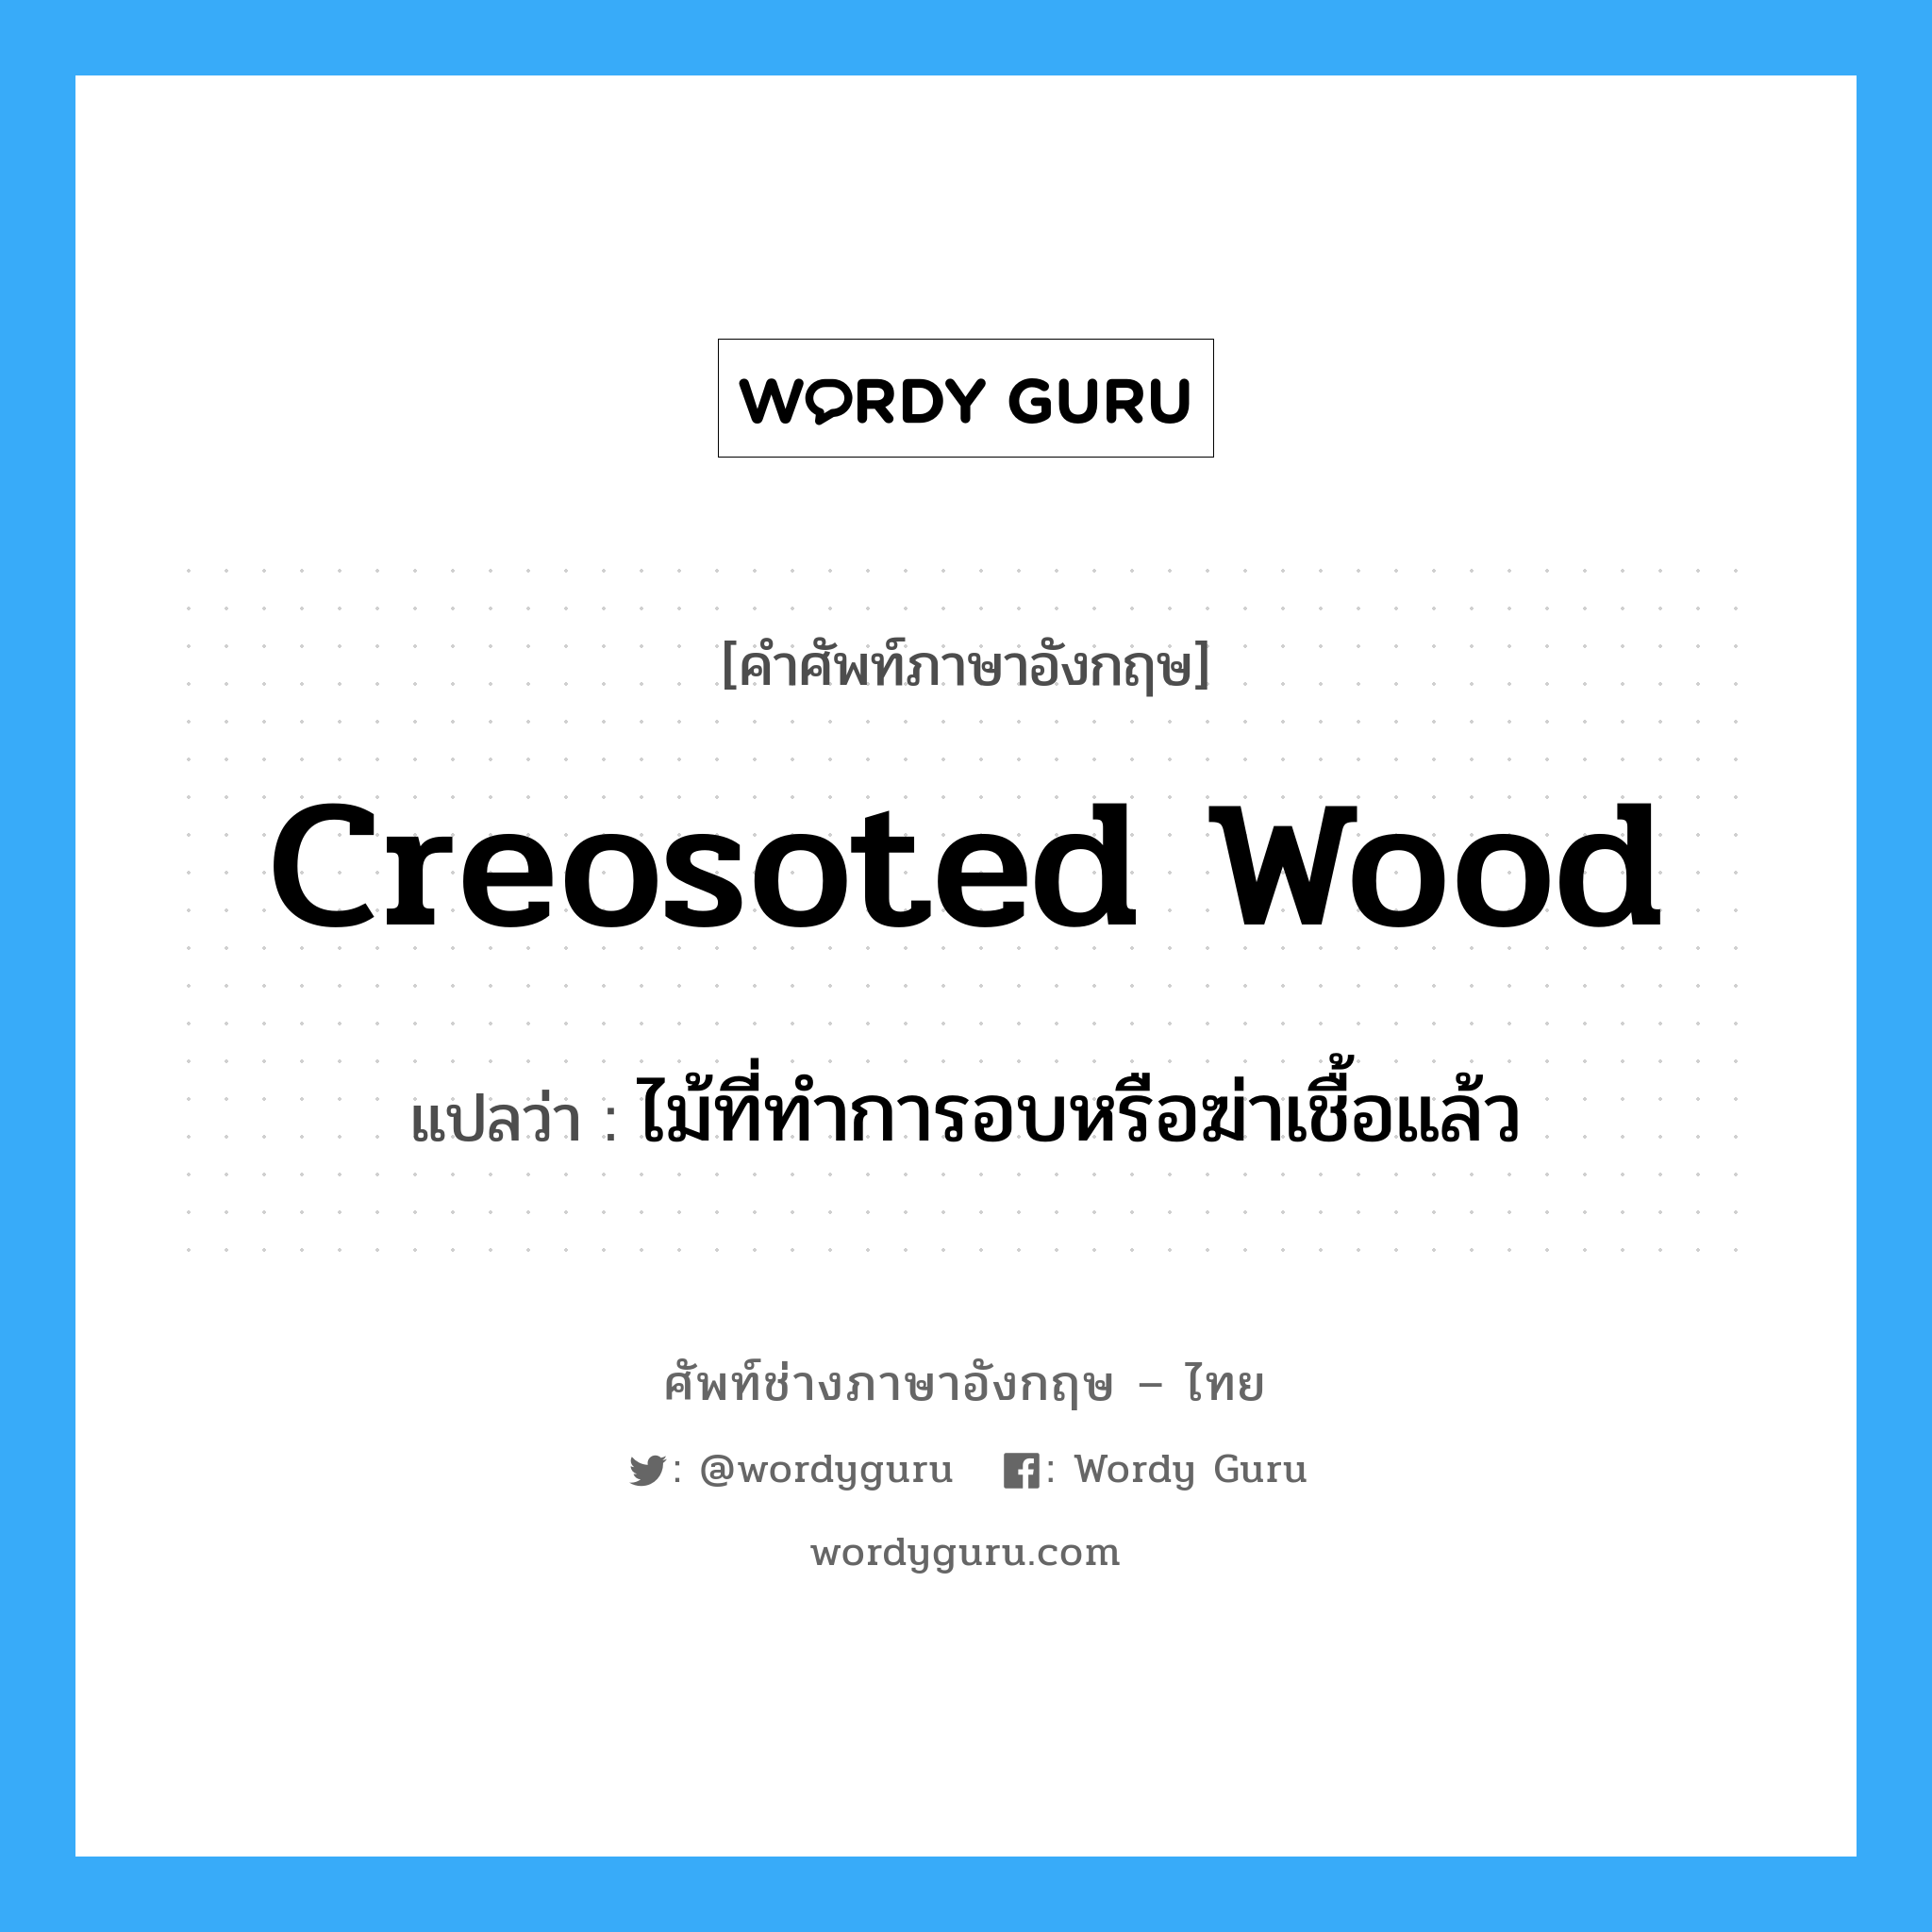 creosoted wood แปลว่า?, คำศัพท์ช่างภาษาอังกฤษ - ไทย creosoted wood คำศัพท์ภาษาอังกฤษ creosoted wood แปลว่า ไม้ที่ทำการอบหรือฆ่าเชื้อแล้ว